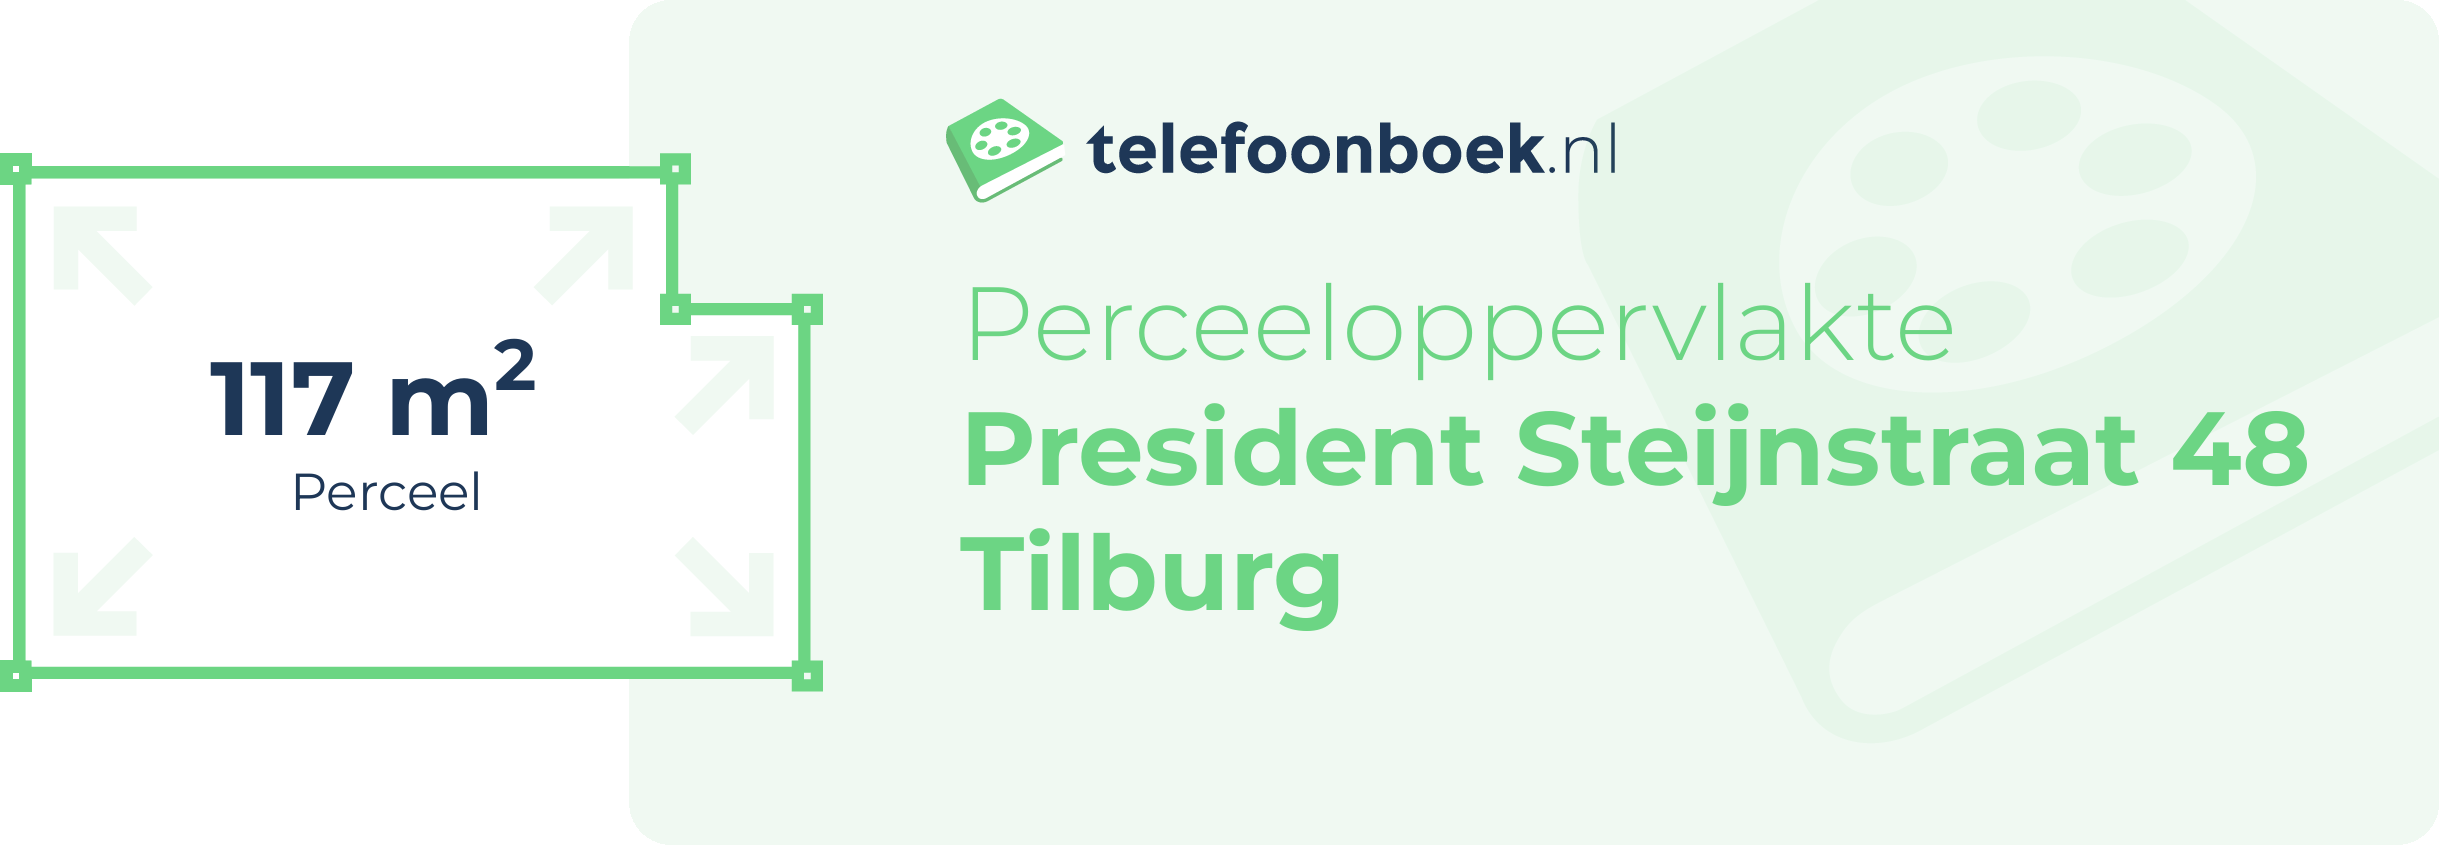 Perceeloppervlakte President Steijnstraat 48 Tilburg